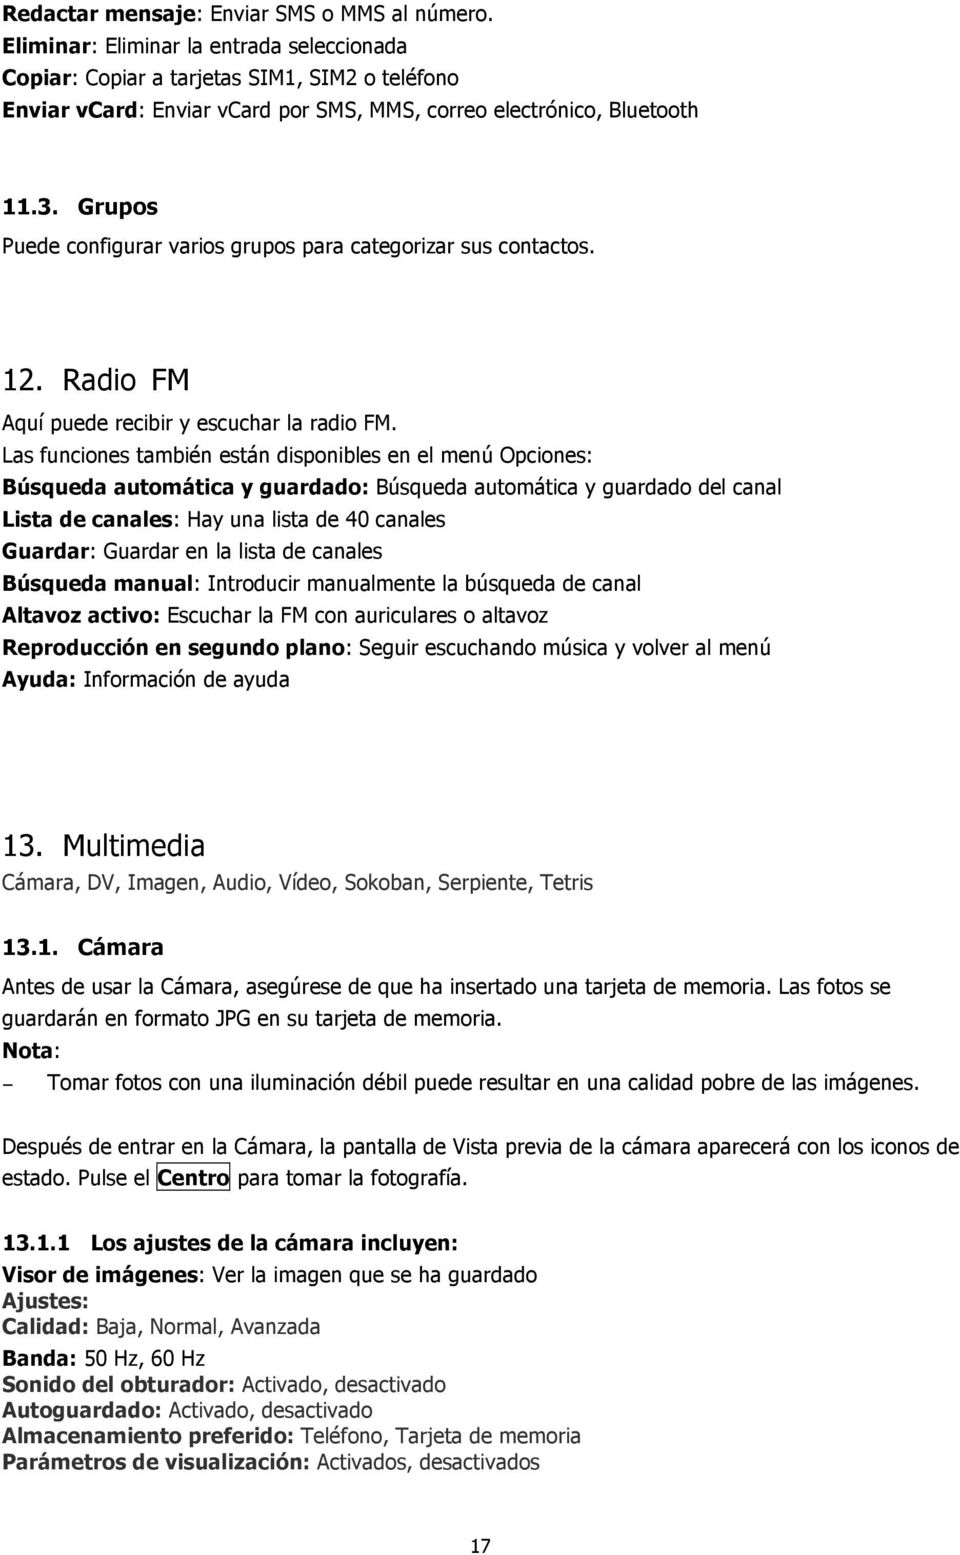 Grupos Puede configurar varios grupos para categorizar sus contactos. 12. Radio FM Aquí puede recibir y escuchar la radio FM.